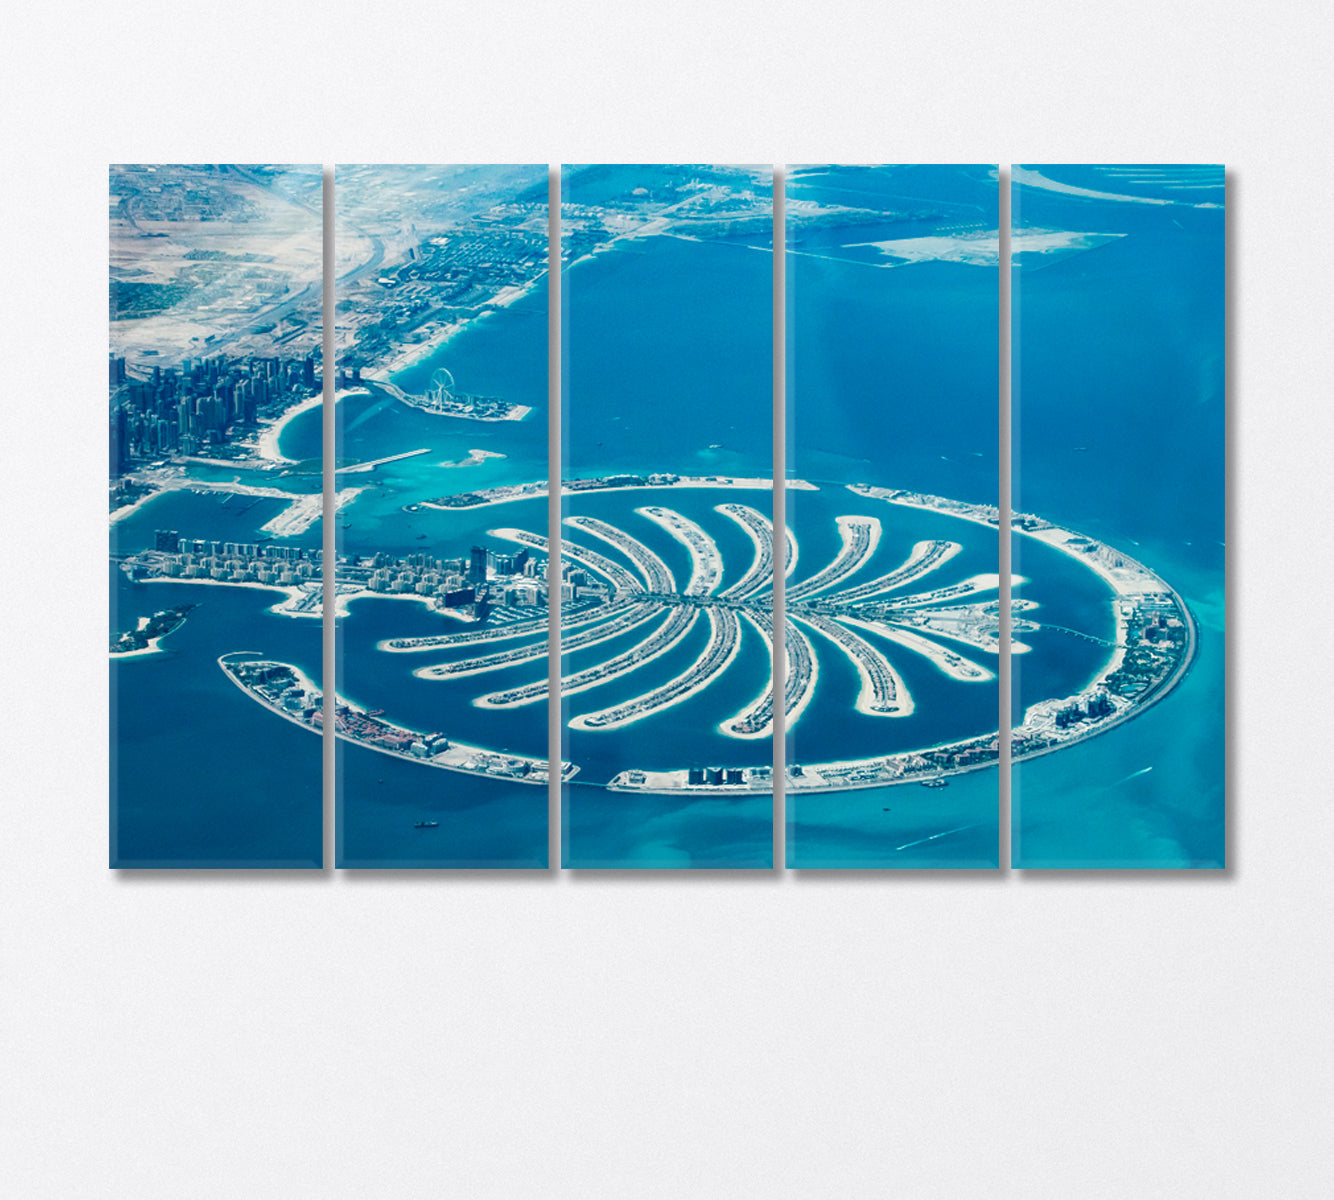 Palm Jumeirah Dubai from the Air Canvas Print-Canvas Print-CetArt-5 Panels-36x24 inches-CetArt